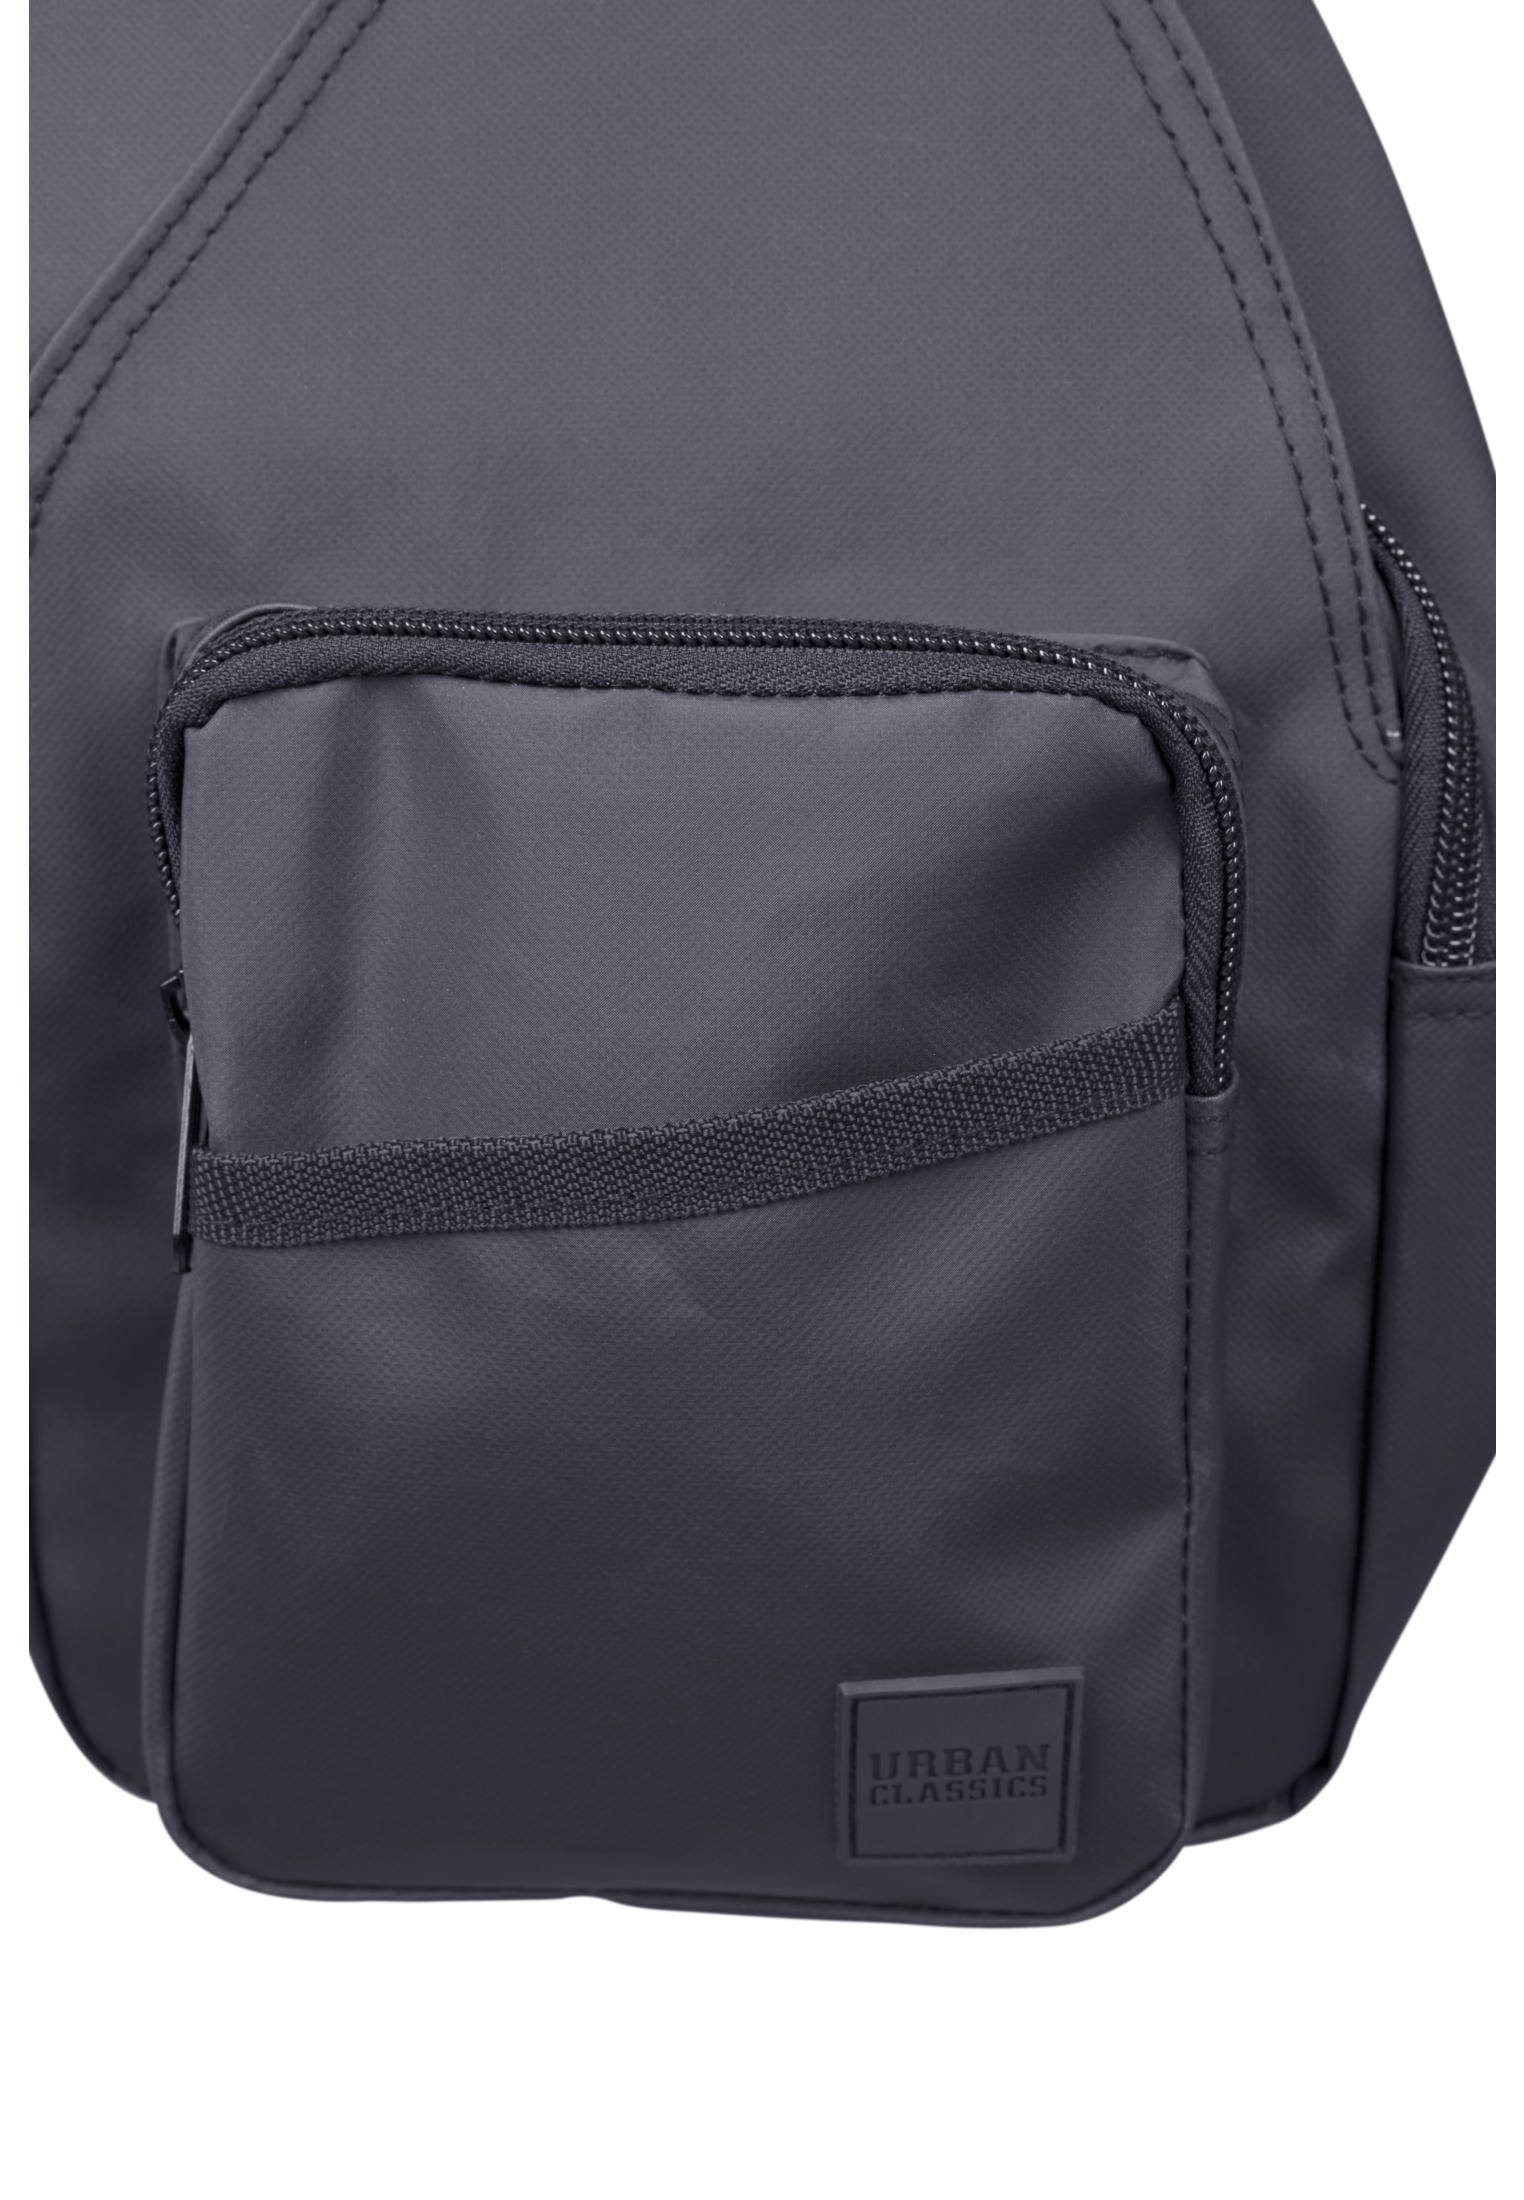 Taschen Multi Pocket Shoulder Bag in Farbe black/black